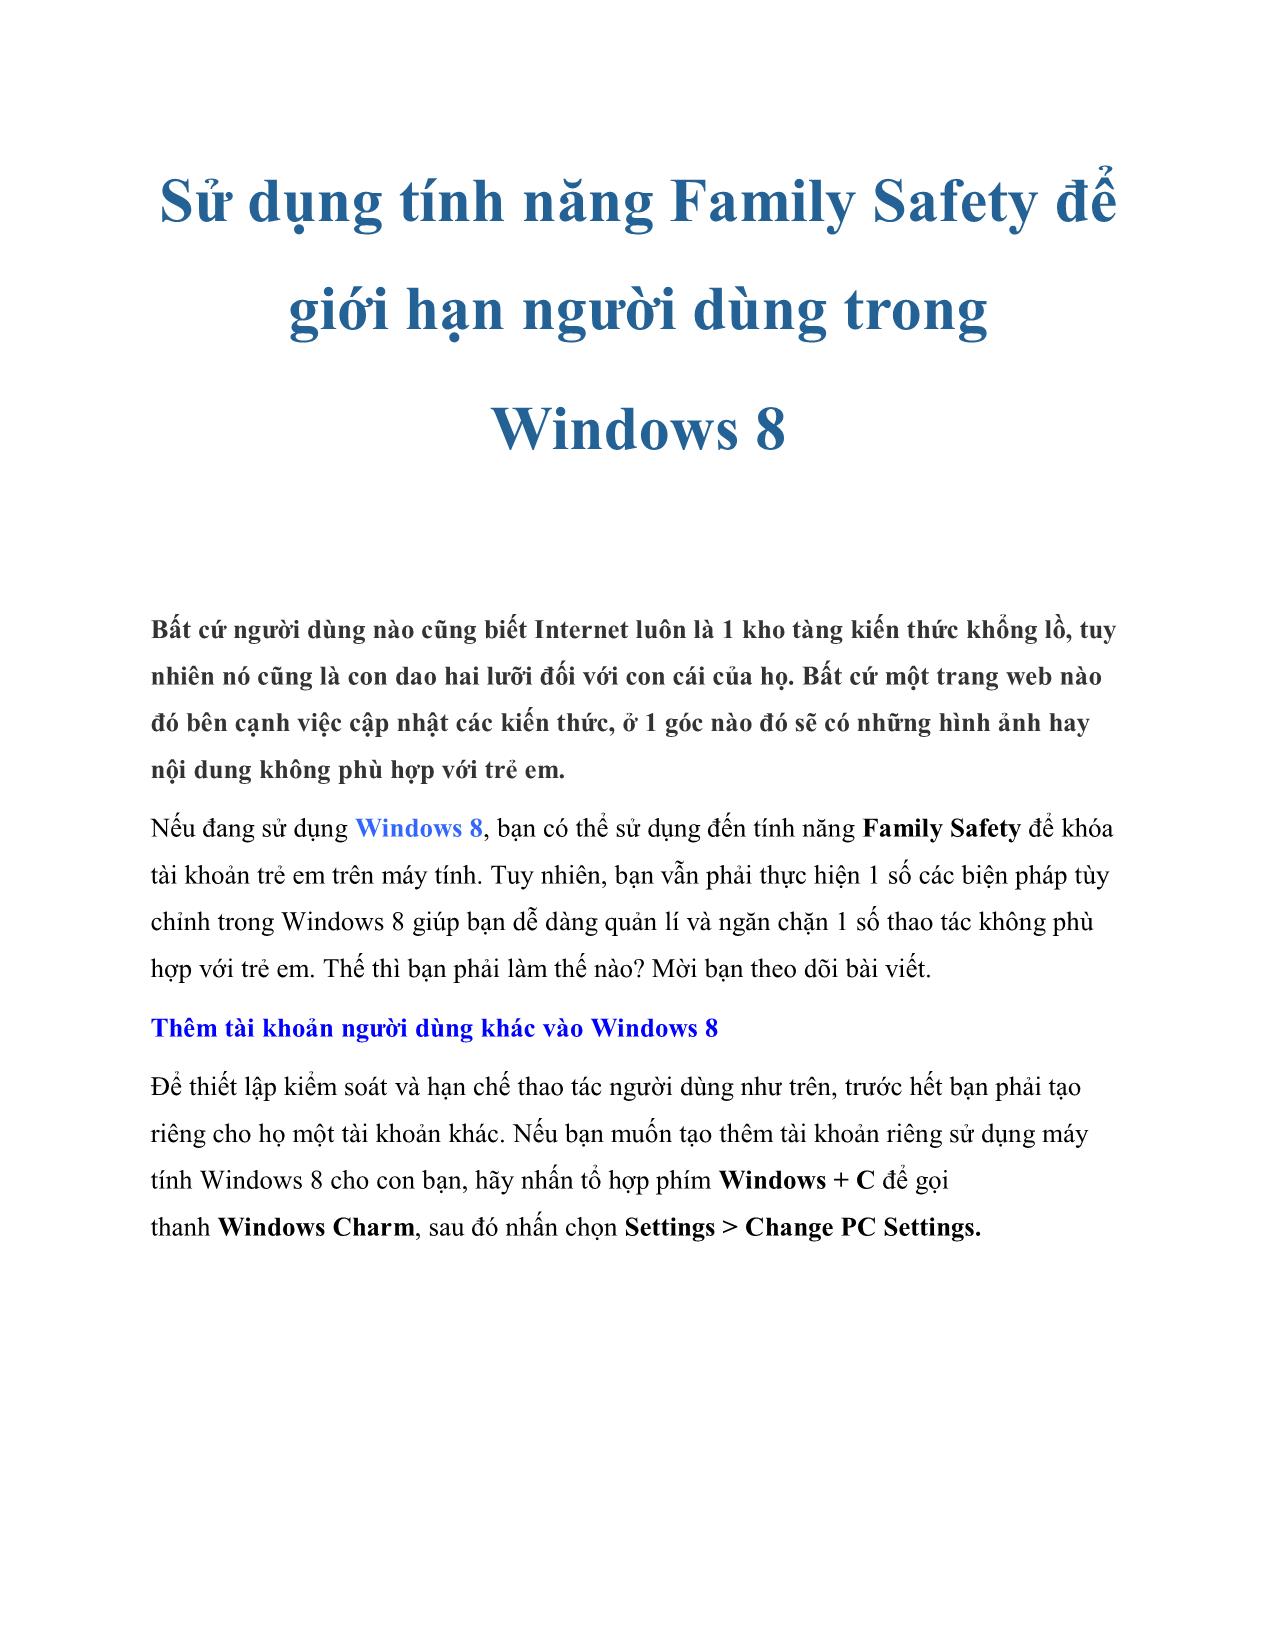 Sử dụng tính năng Family Safety để giới hạn người dùng trong Windows 8 trang 1